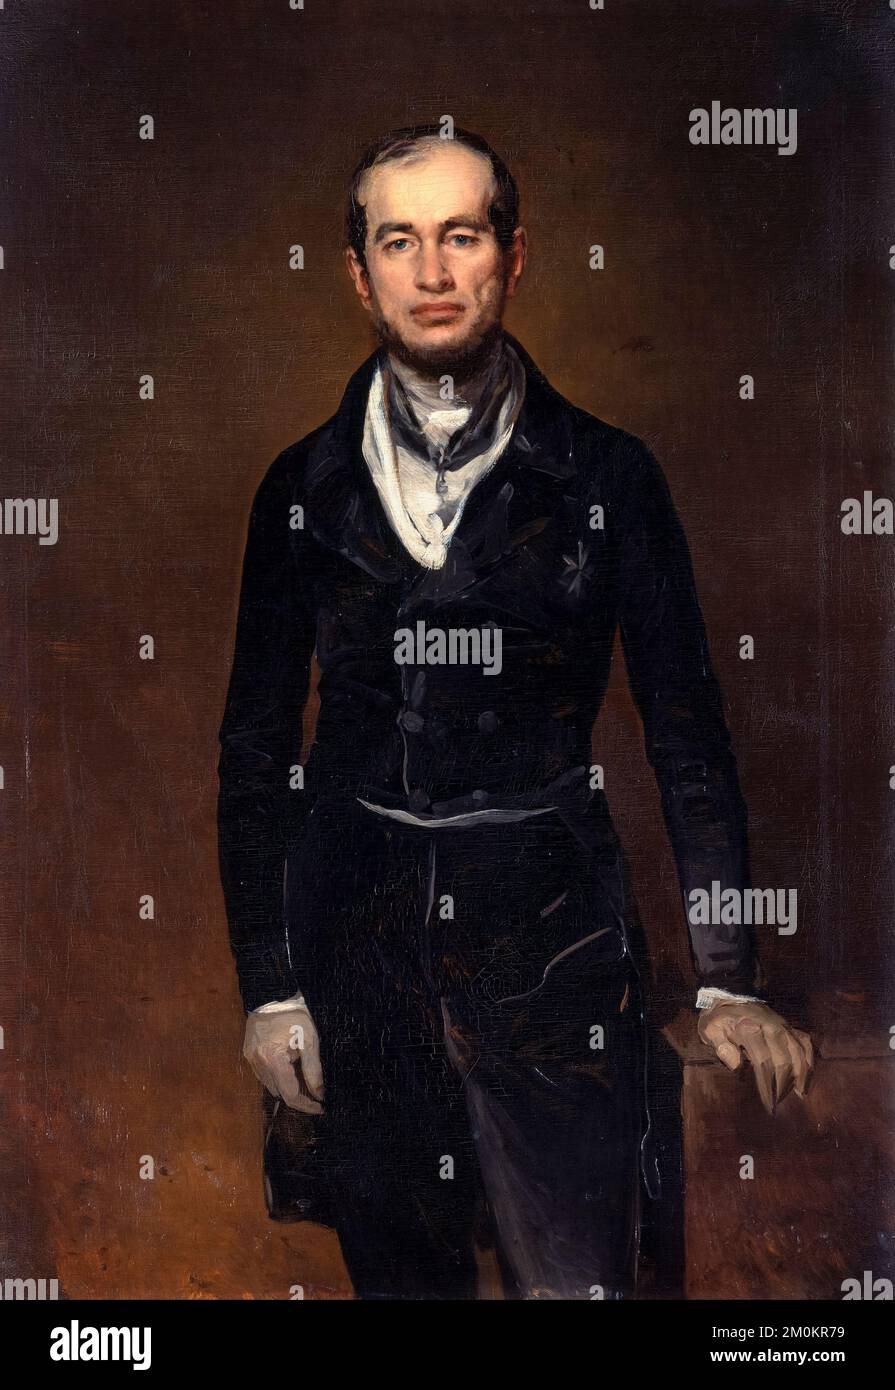 Comte de Chamberlain Julius Zech-Burkersroda (1805-1872), homme politique allemand, portrait peint à l'huile sur toile par Ferdinand von Rayski, 1841 Banque D'Images